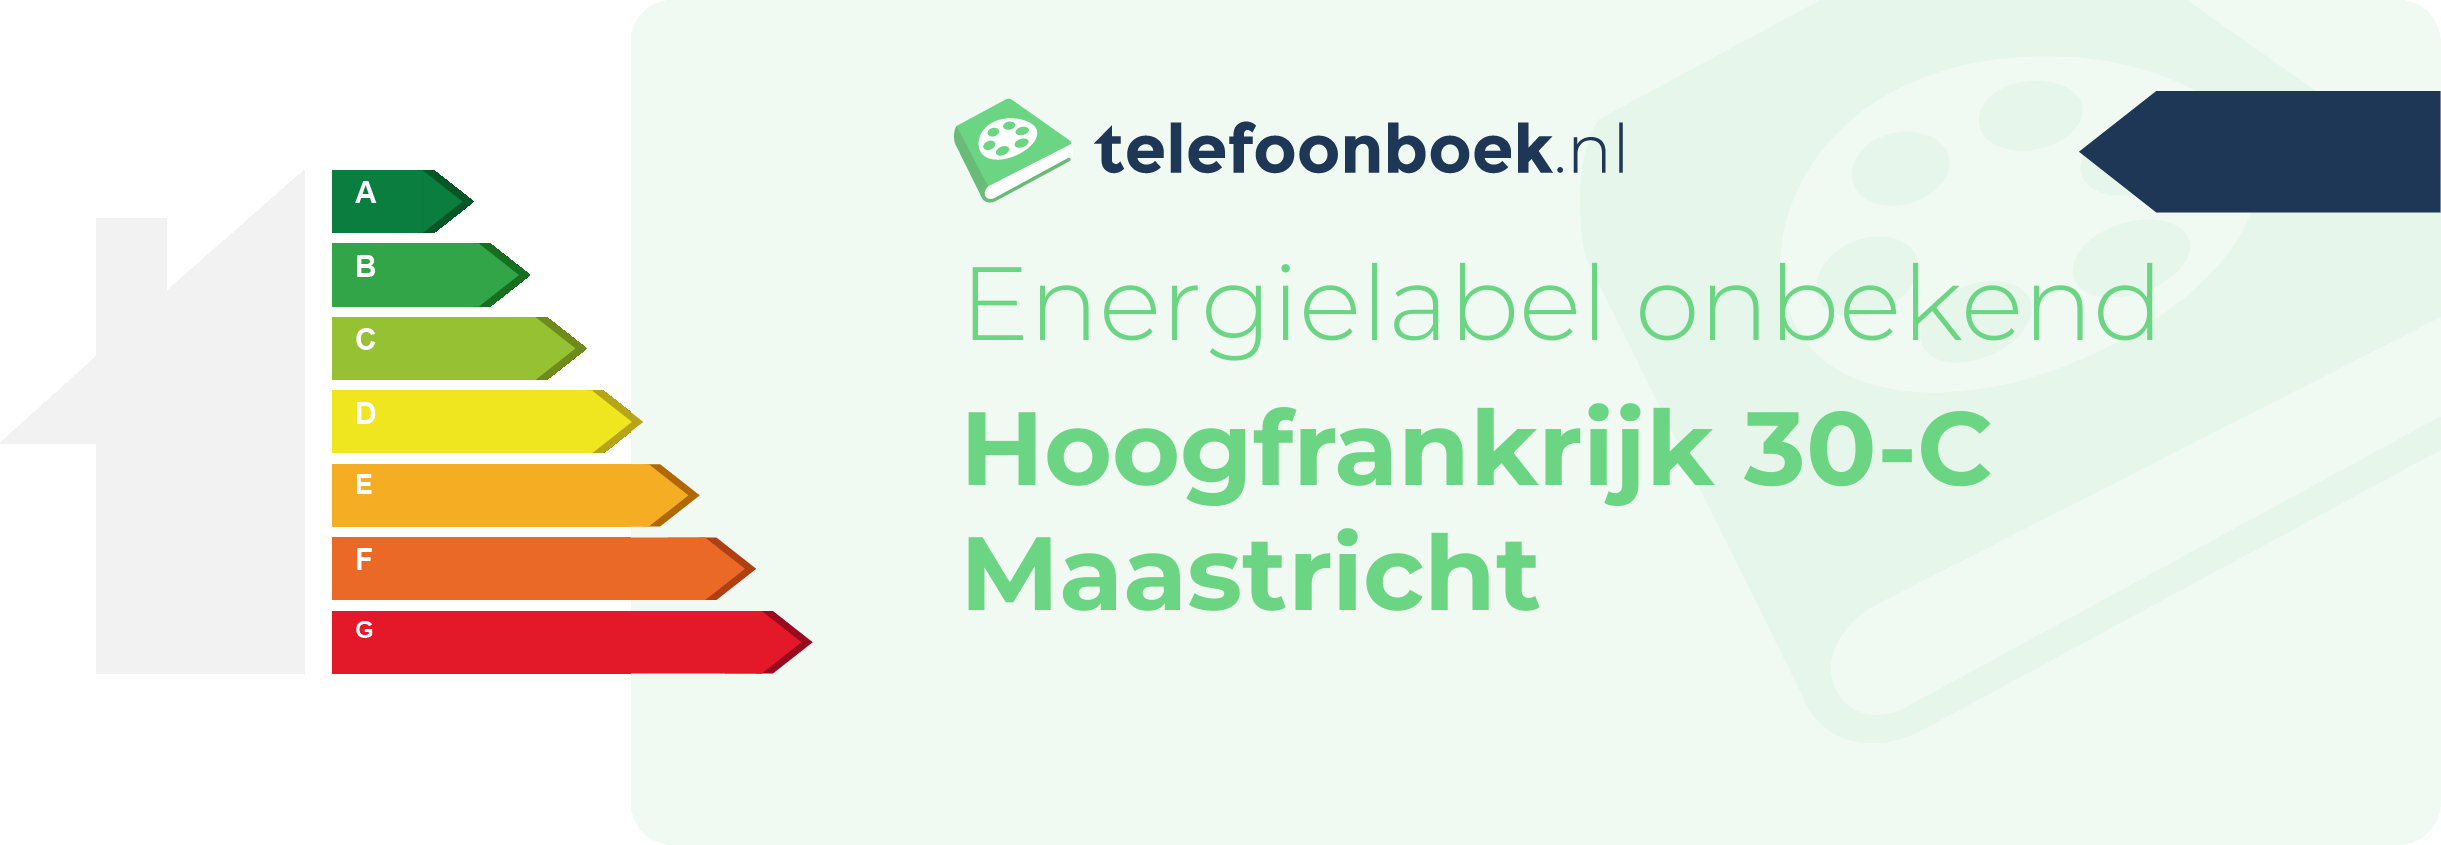 Energielabel Hoogfrankrijk 30-C Maastricht